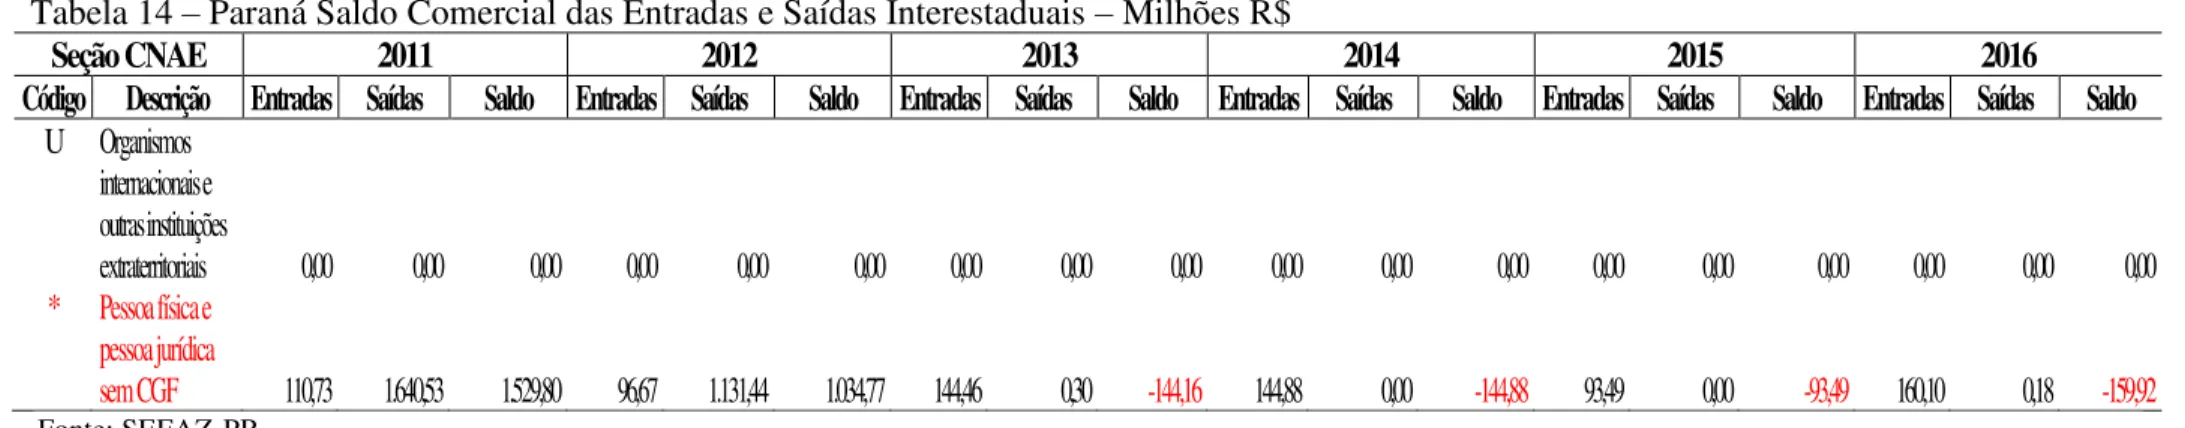 Tabela 15 – Mato Grosso Saldo Comercial das Entradas e Saídas Interestaduais – Milhões R$ 